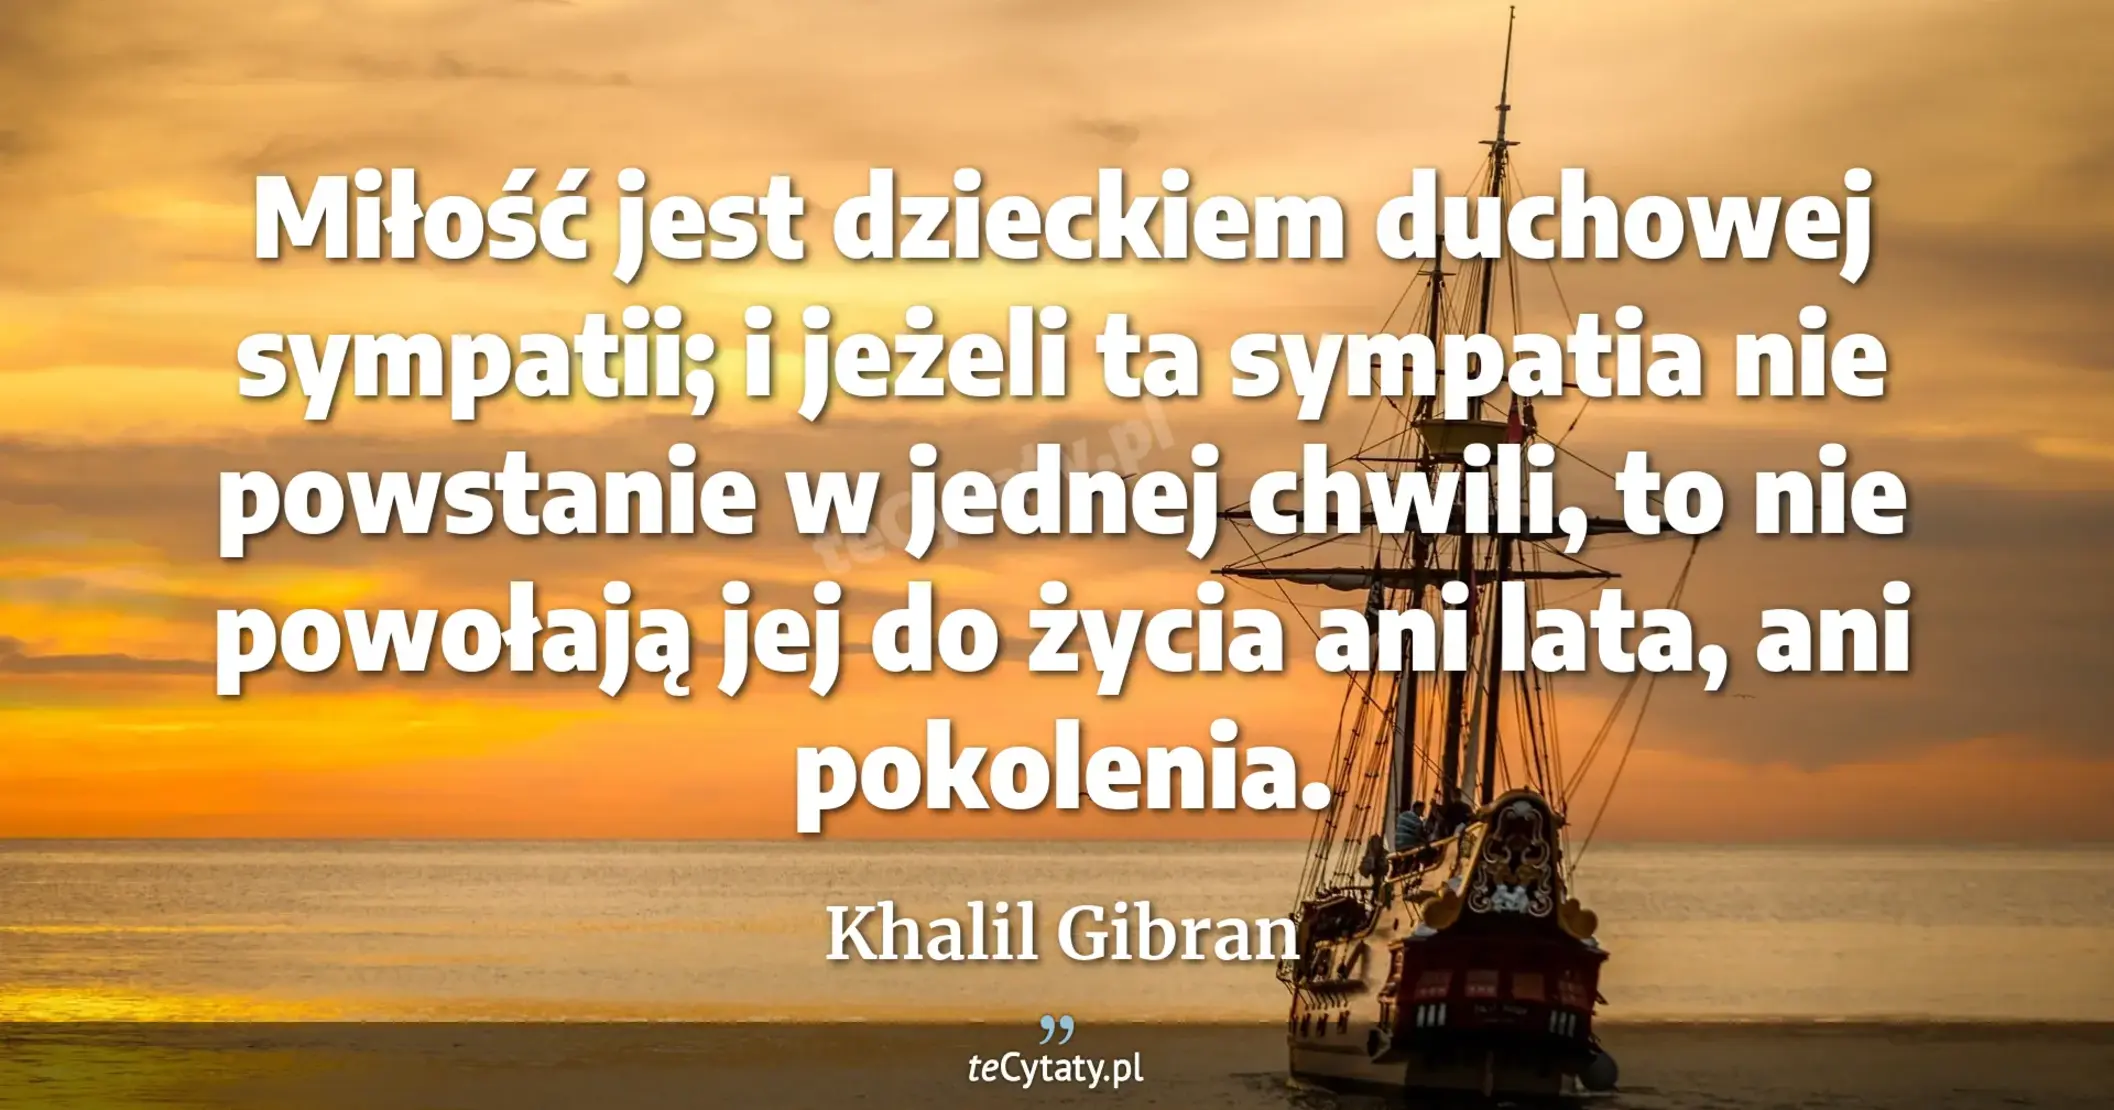 Miłość jest dzieckiem duchowej sympatii; i jeżeli ta sympatia nie powstanie w jednej chwili, to nie powołają jej do życia ani lata, ani pokolenia. - Khalil Gibran